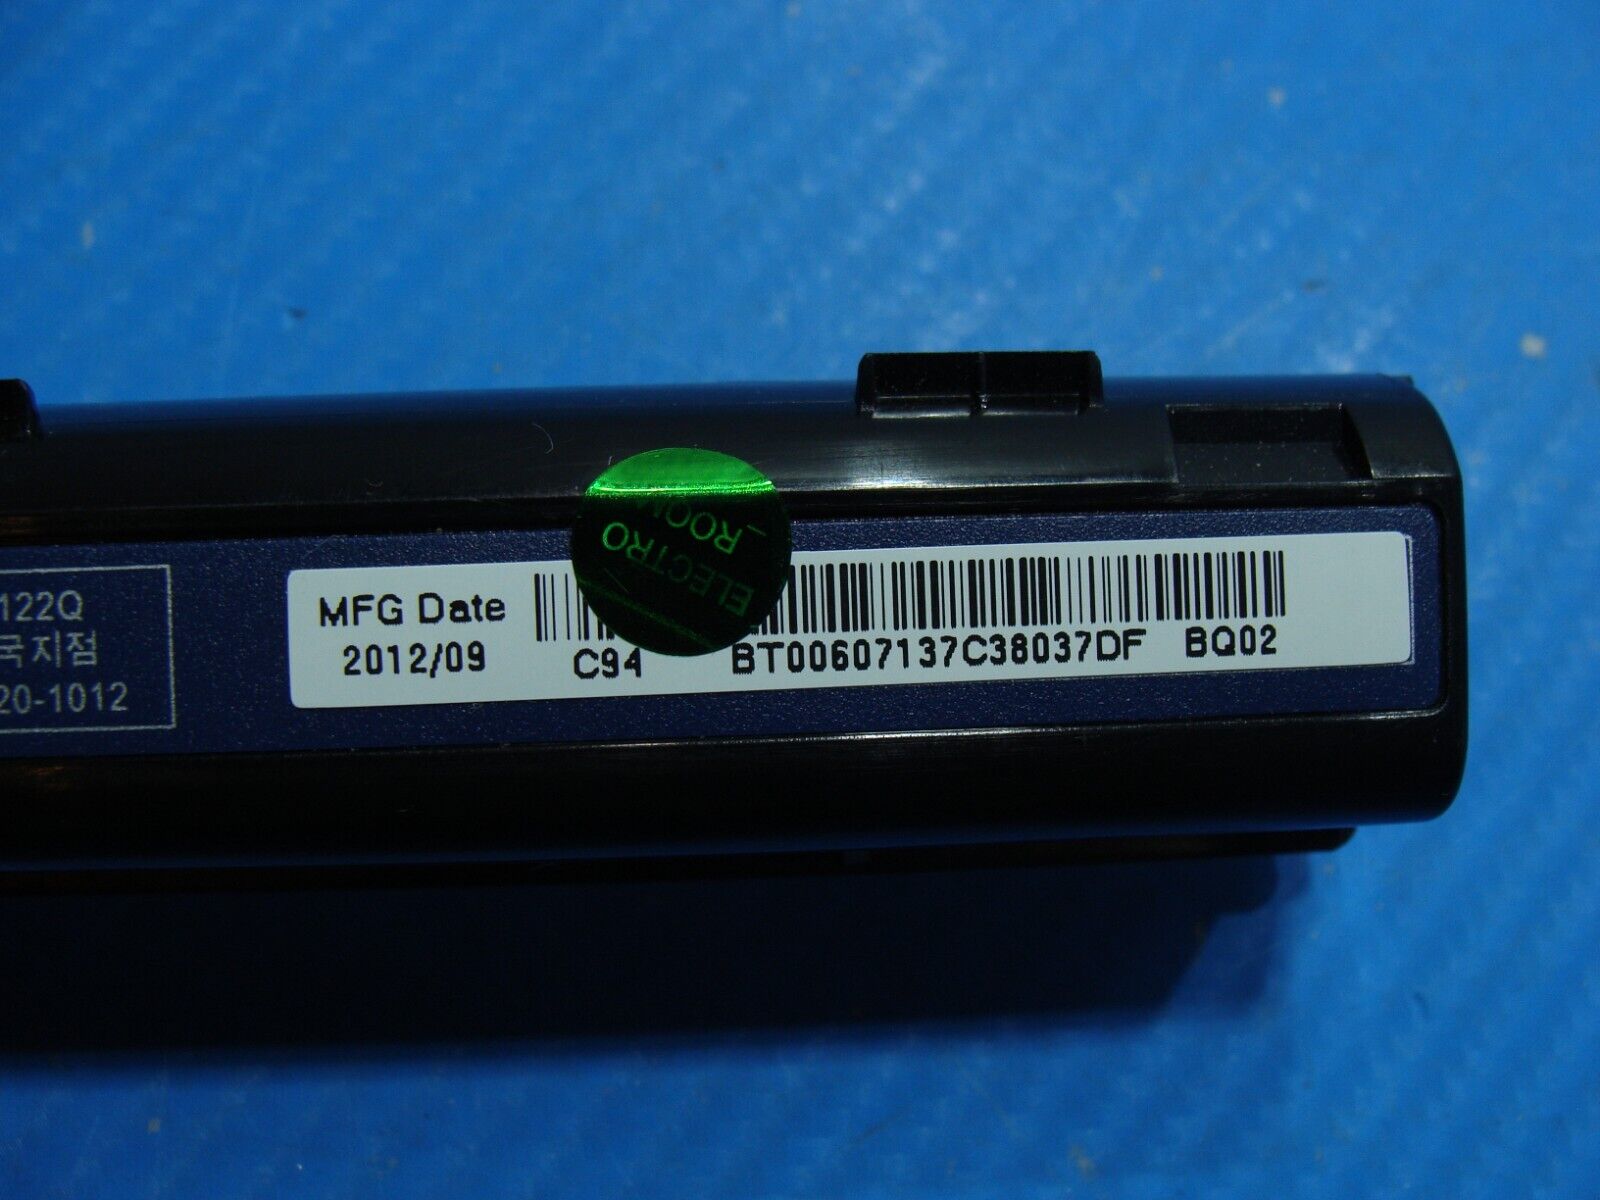 Acer Aspire 17” V3-731 Genuine Laptop Battery 11.1V 48Wh 4400mAh AS10D75